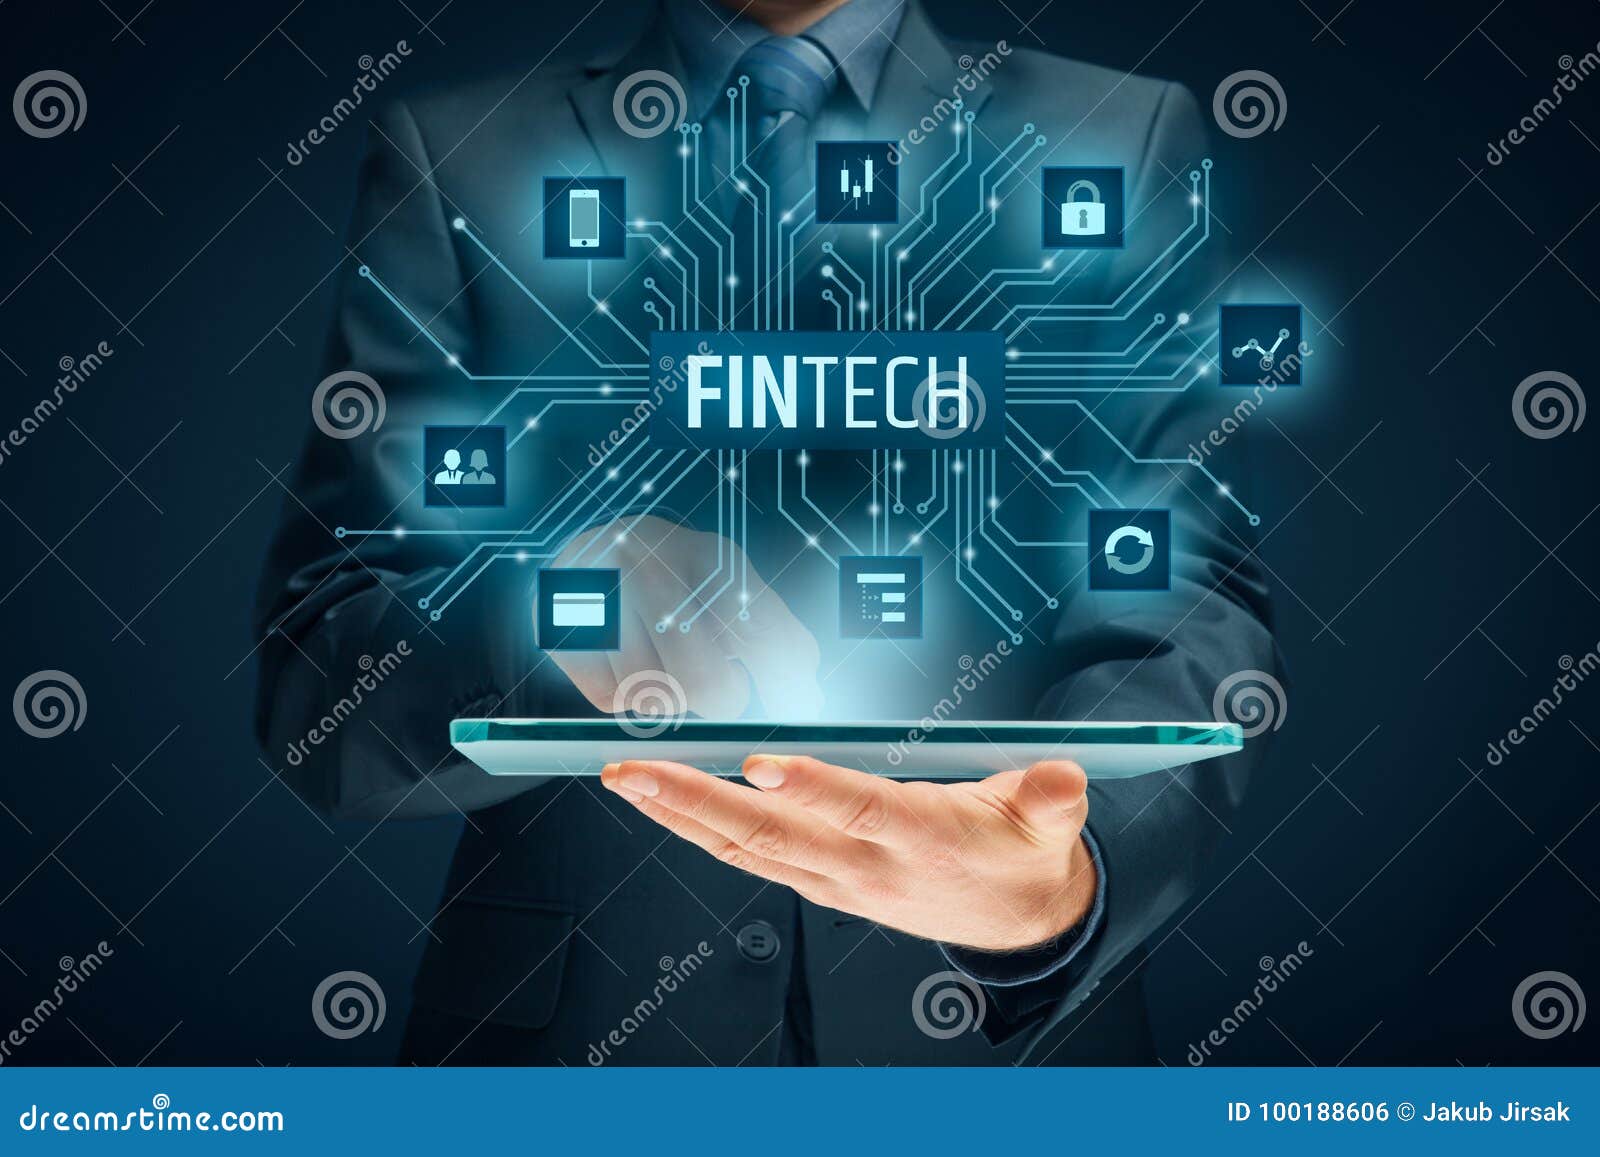 fintech and financial technology